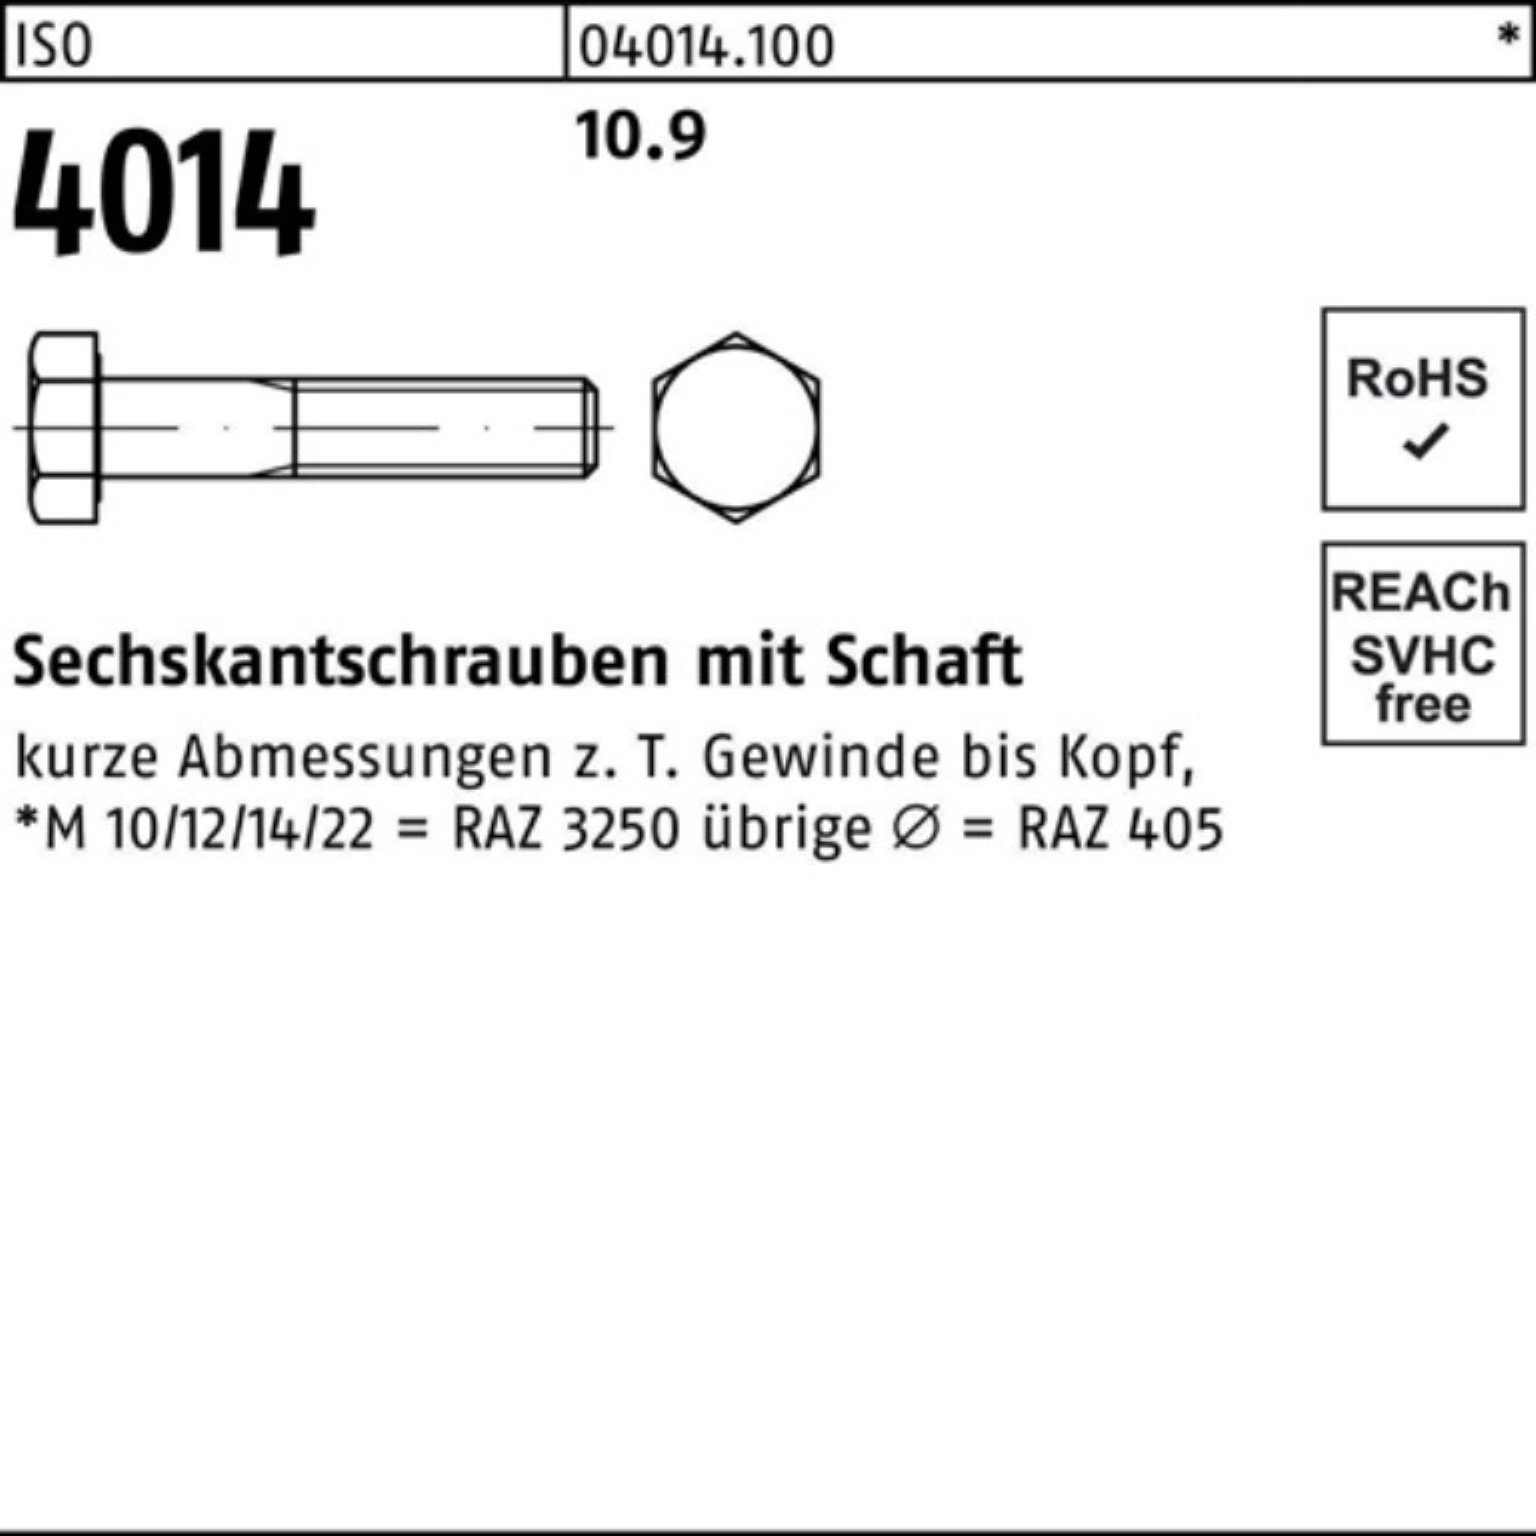 Schaft Pack Bufab 1 Sechskantschraube 4014 10.9 ISO IS Stück M24x 100er Sechskantschraube 260